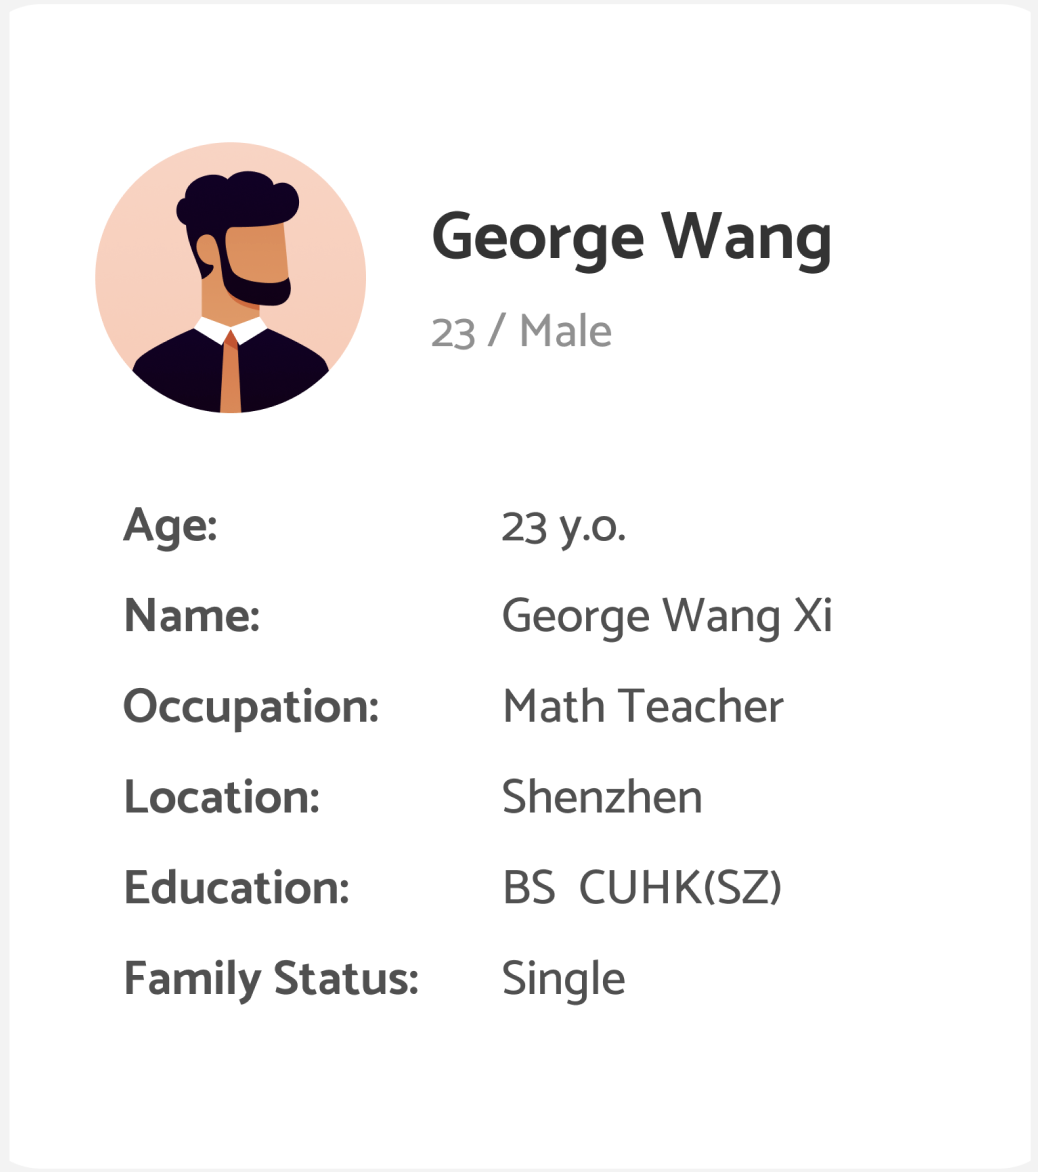 George Wang